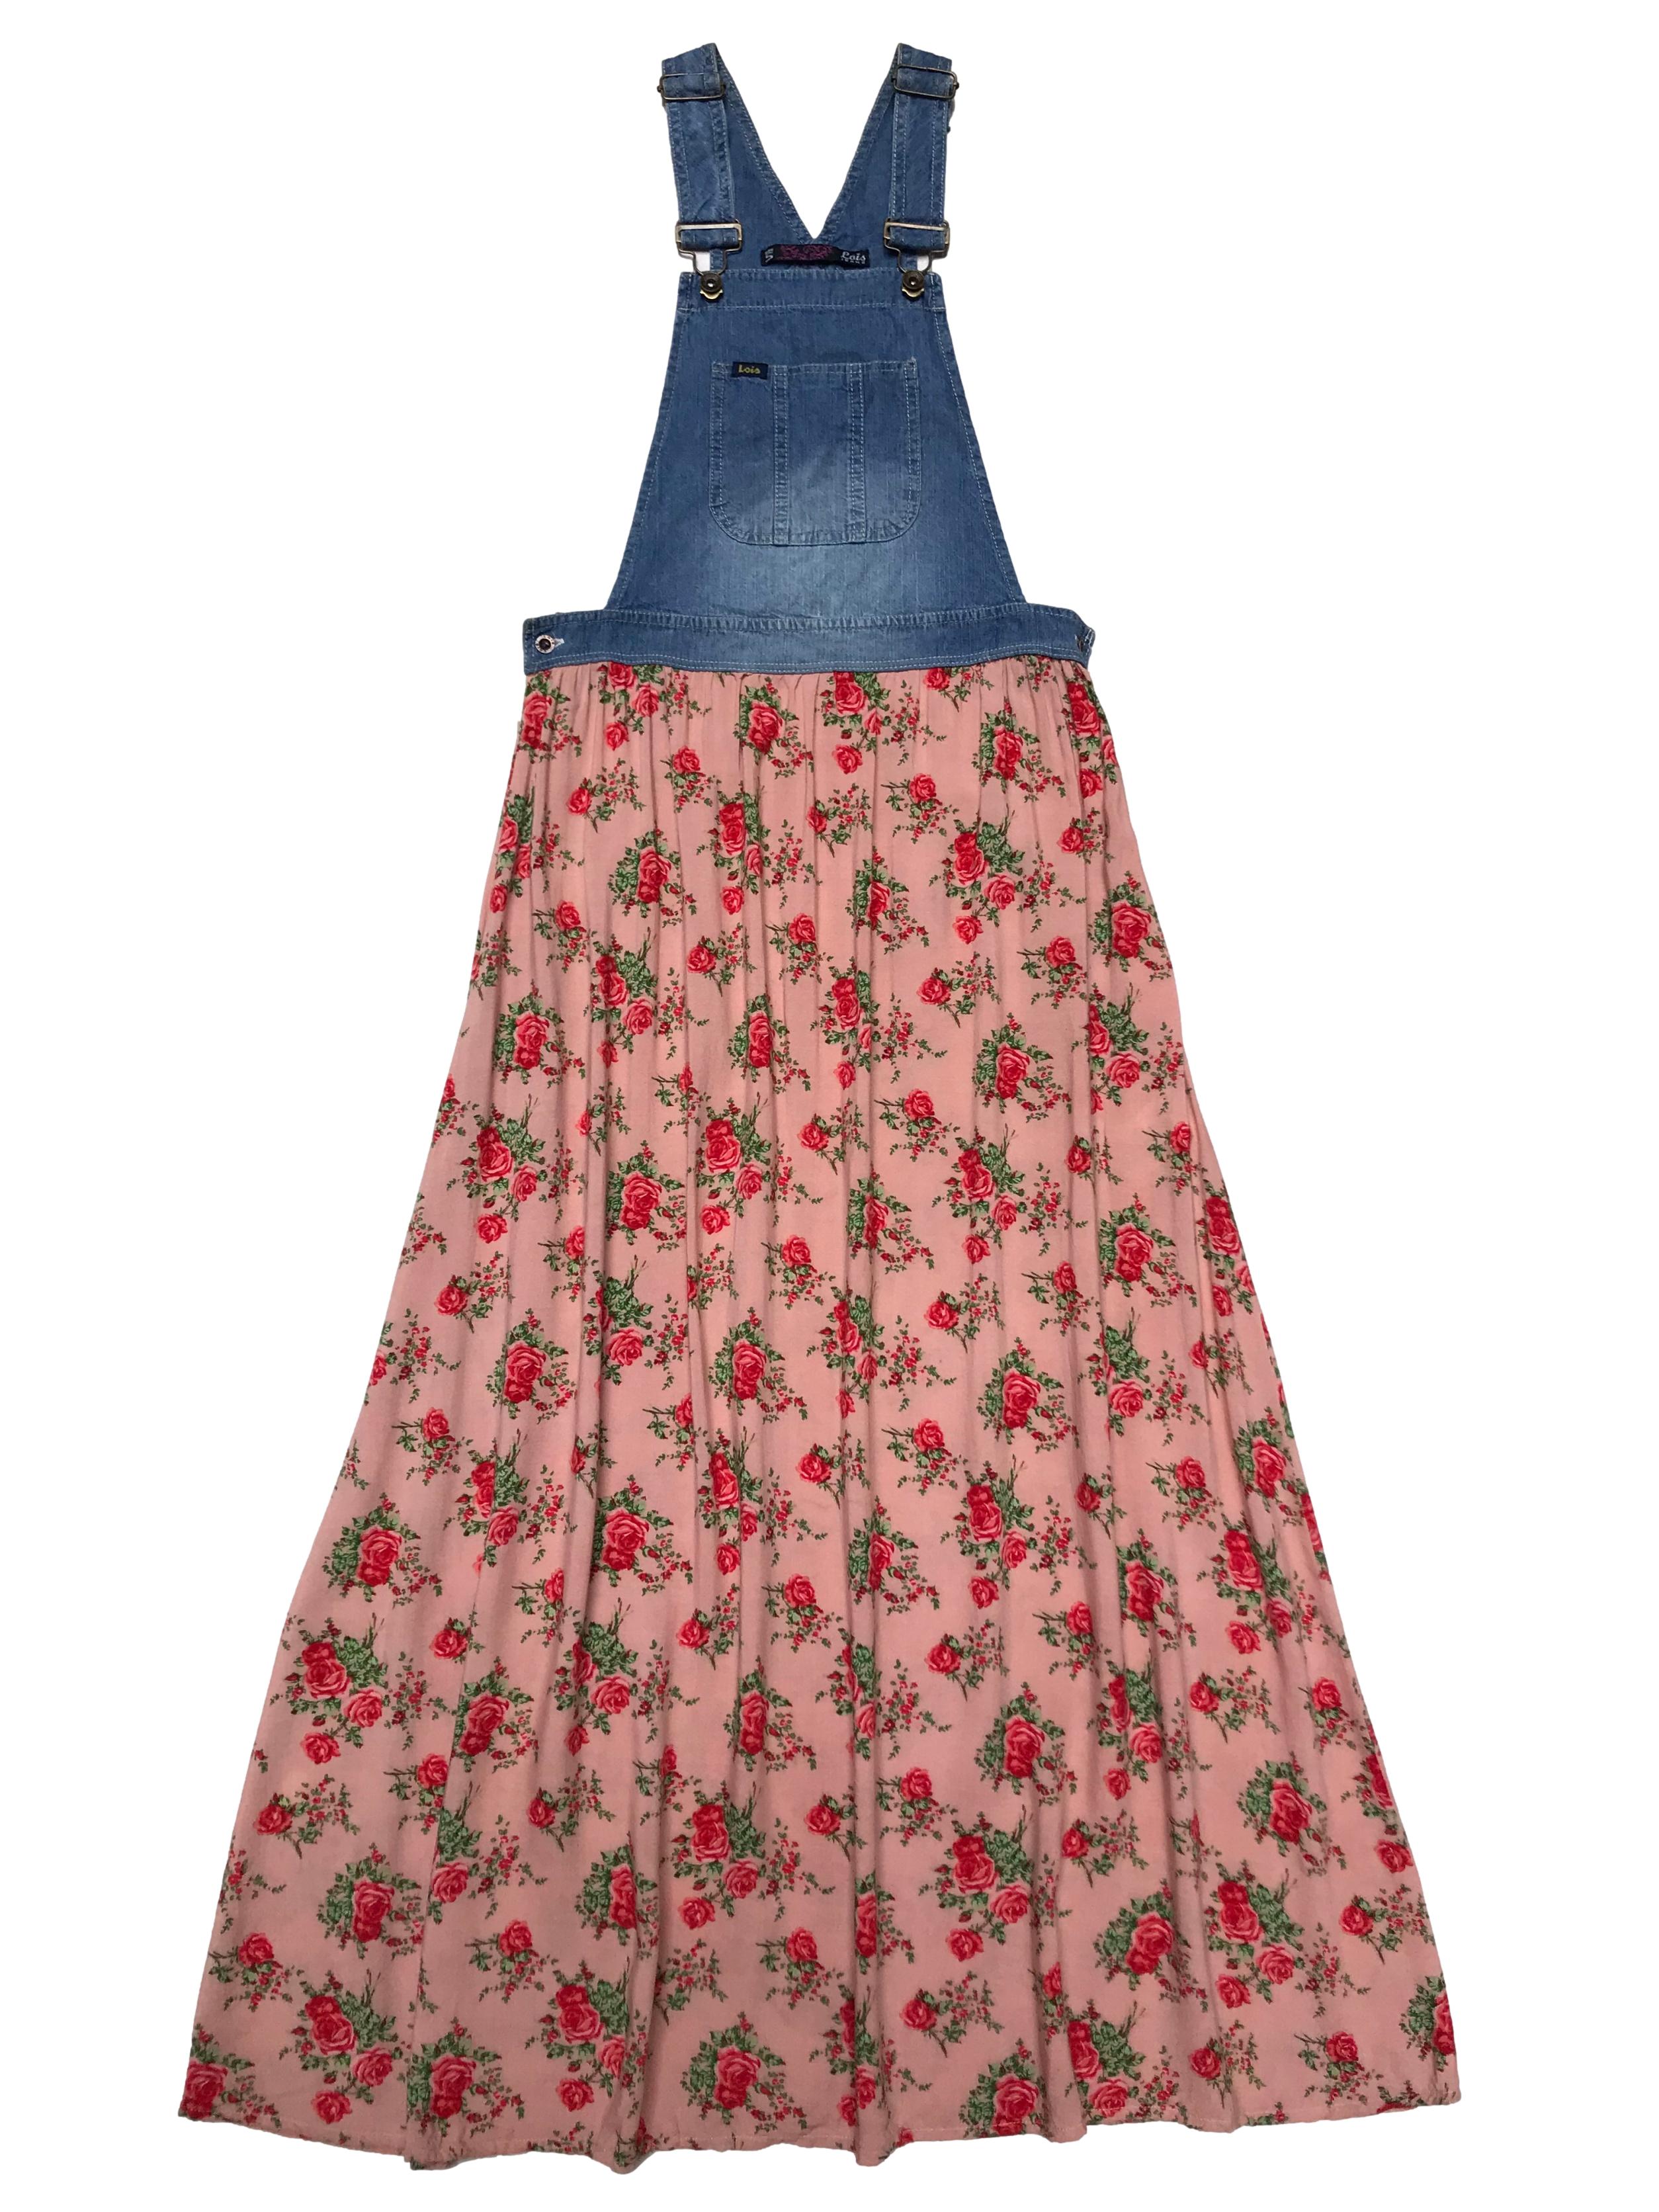 Jumper jean con tiras regulables y broches metálicos, tiene falda larga de tela con estampados de rosas y cierre invisible lateral. Cintura 70cm. Largo 114cm desde el pecho